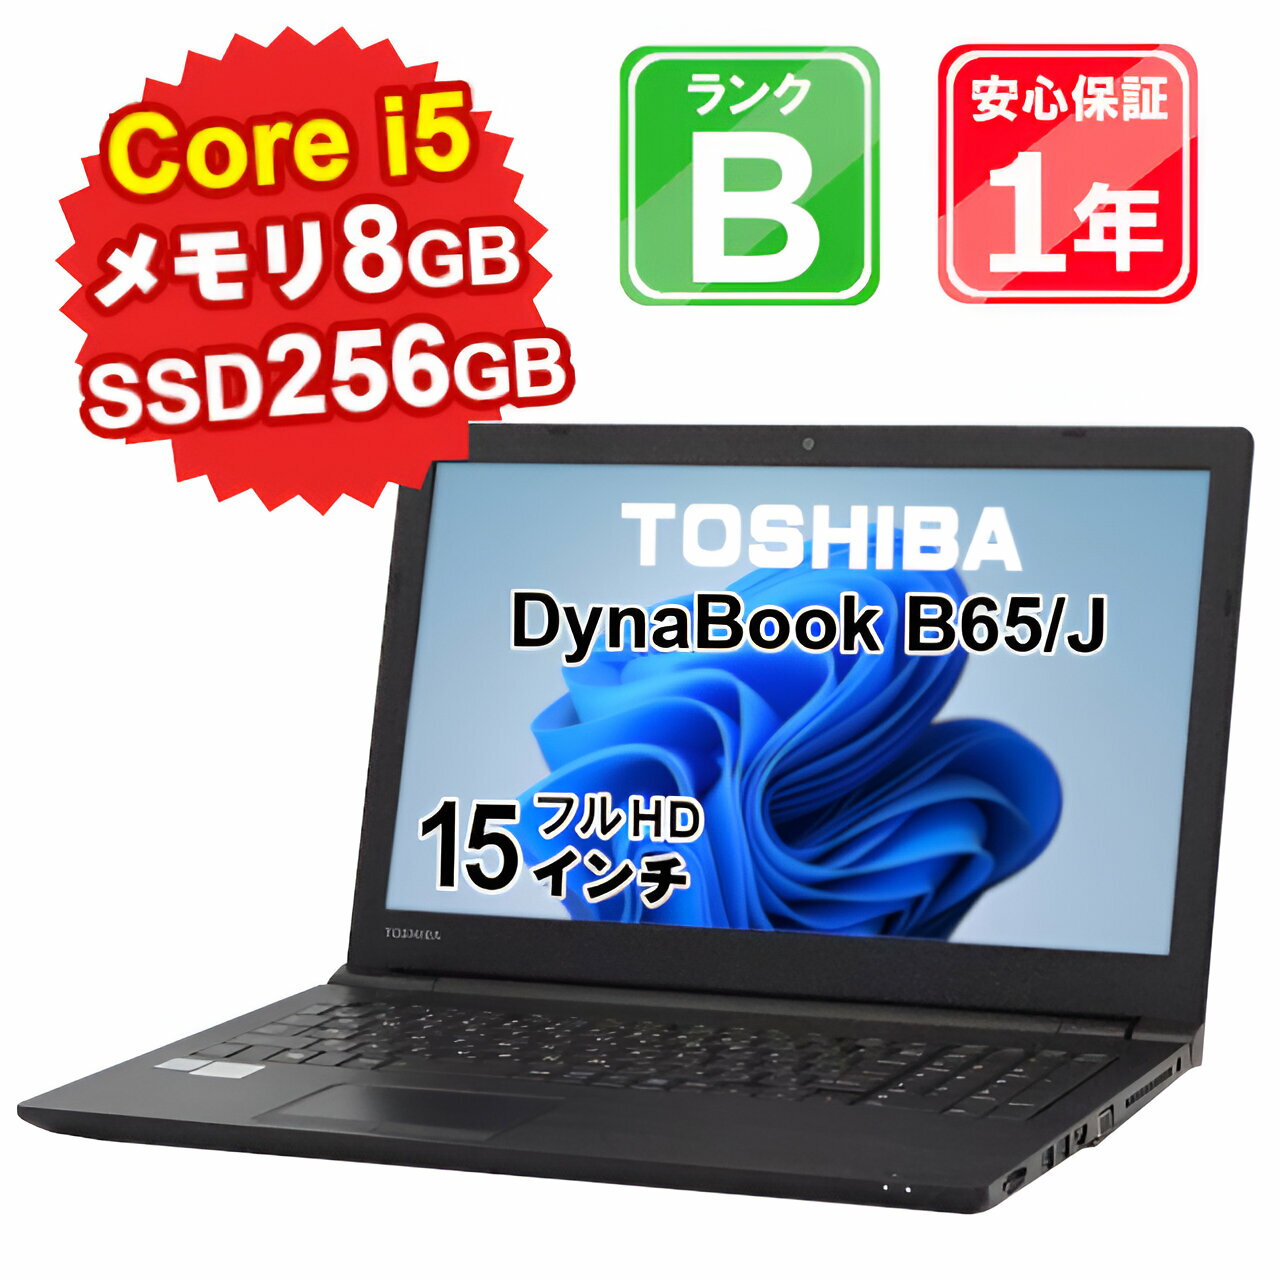 【6/1-6/2限定12 OFFクーポン開催中】【中古】 中古 パソコン ノートパソコン TOSHIBA DynaBook B65/J PB65JHJ44N7AD21 Core i5-8350U 1.7GHz メモリ8GB SSD256GB Windows11Home DVDマルチ 15インチ フルHD WebCamera有 1年保証 【E】